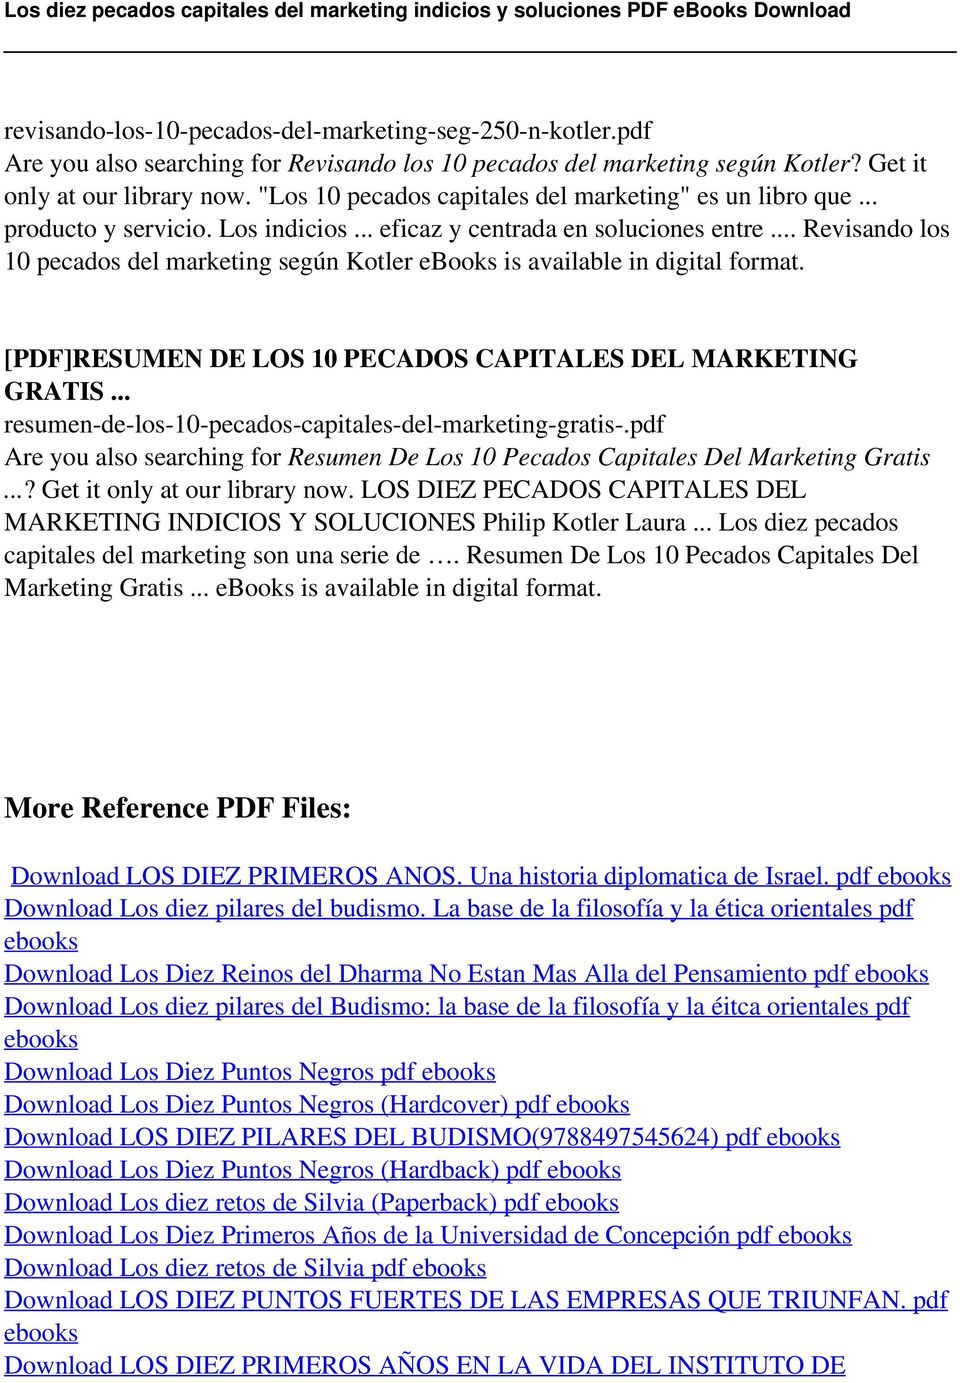 .. Revisando los 10 pecados del marketing según Kotler ebooks is [PDF]RESUMEN DE LOS 10 PECADOS CAPITALES DEL MARKETING GRATIS... resumen-de-los-10-pecados-capitales-del-marketing-gratis-.